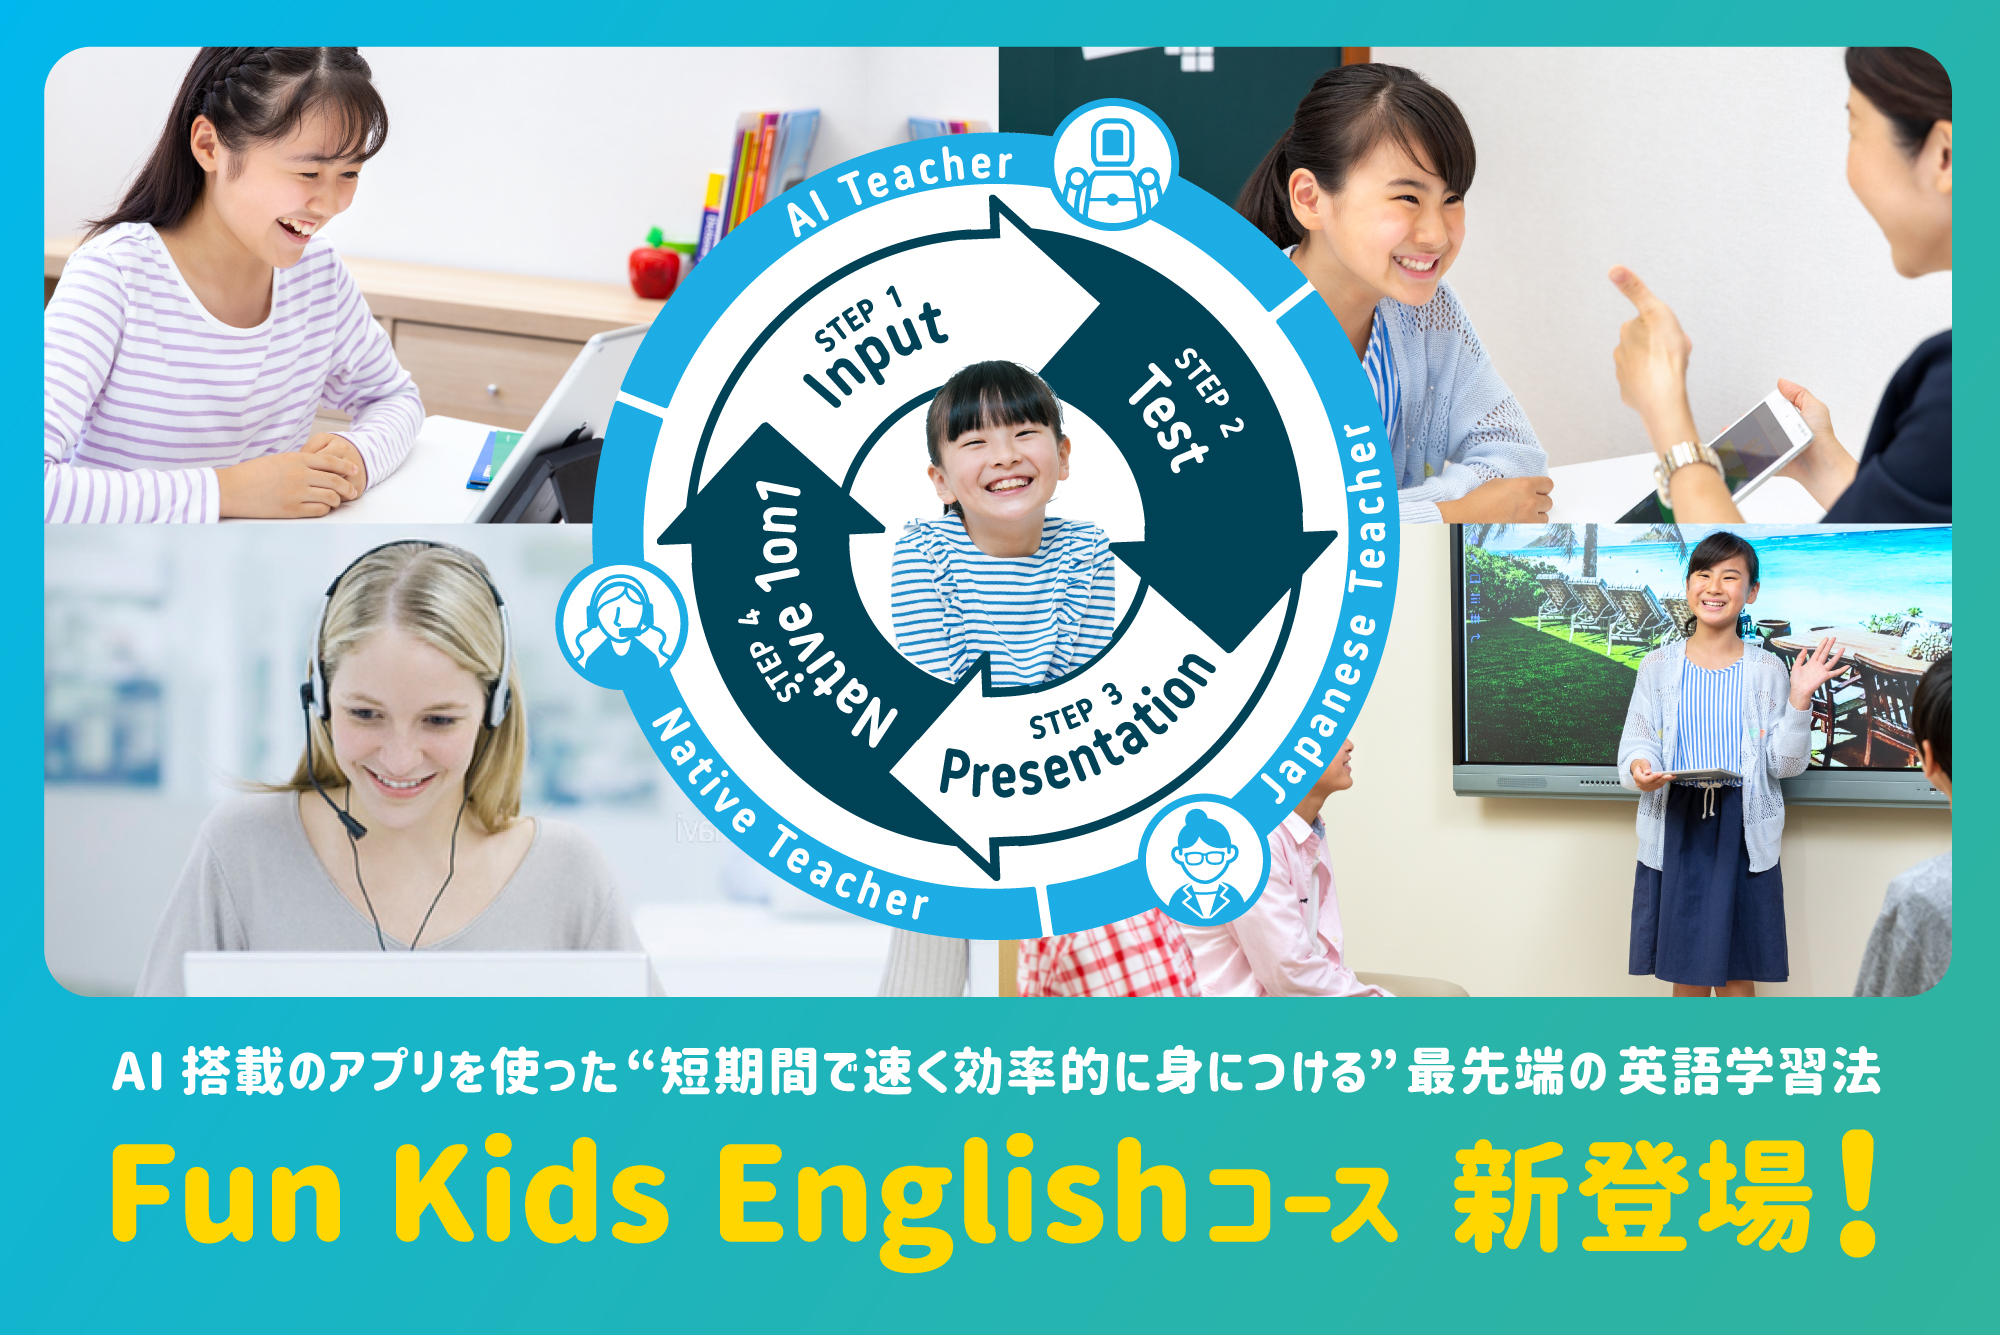 こどもの国校 Winbe ウィンビー 子ども向け英語 英会話スクール 神奈川県青葉区